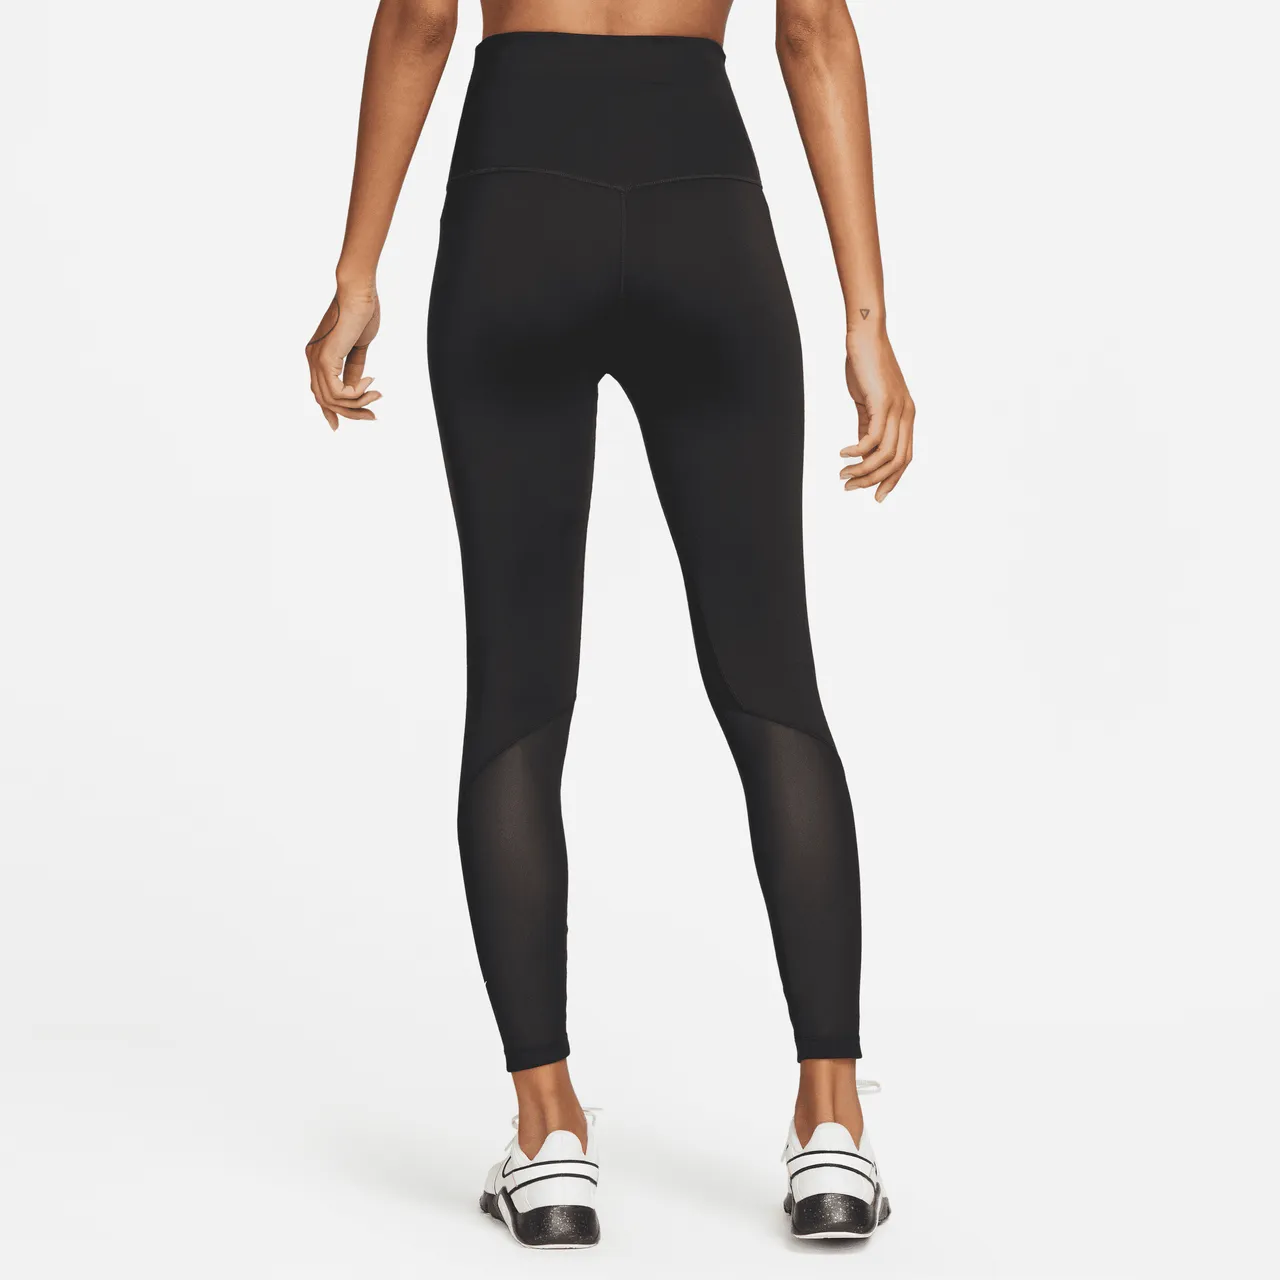 Nike One Women's High-Waisted 7/8 Leggings - Black - Polyester